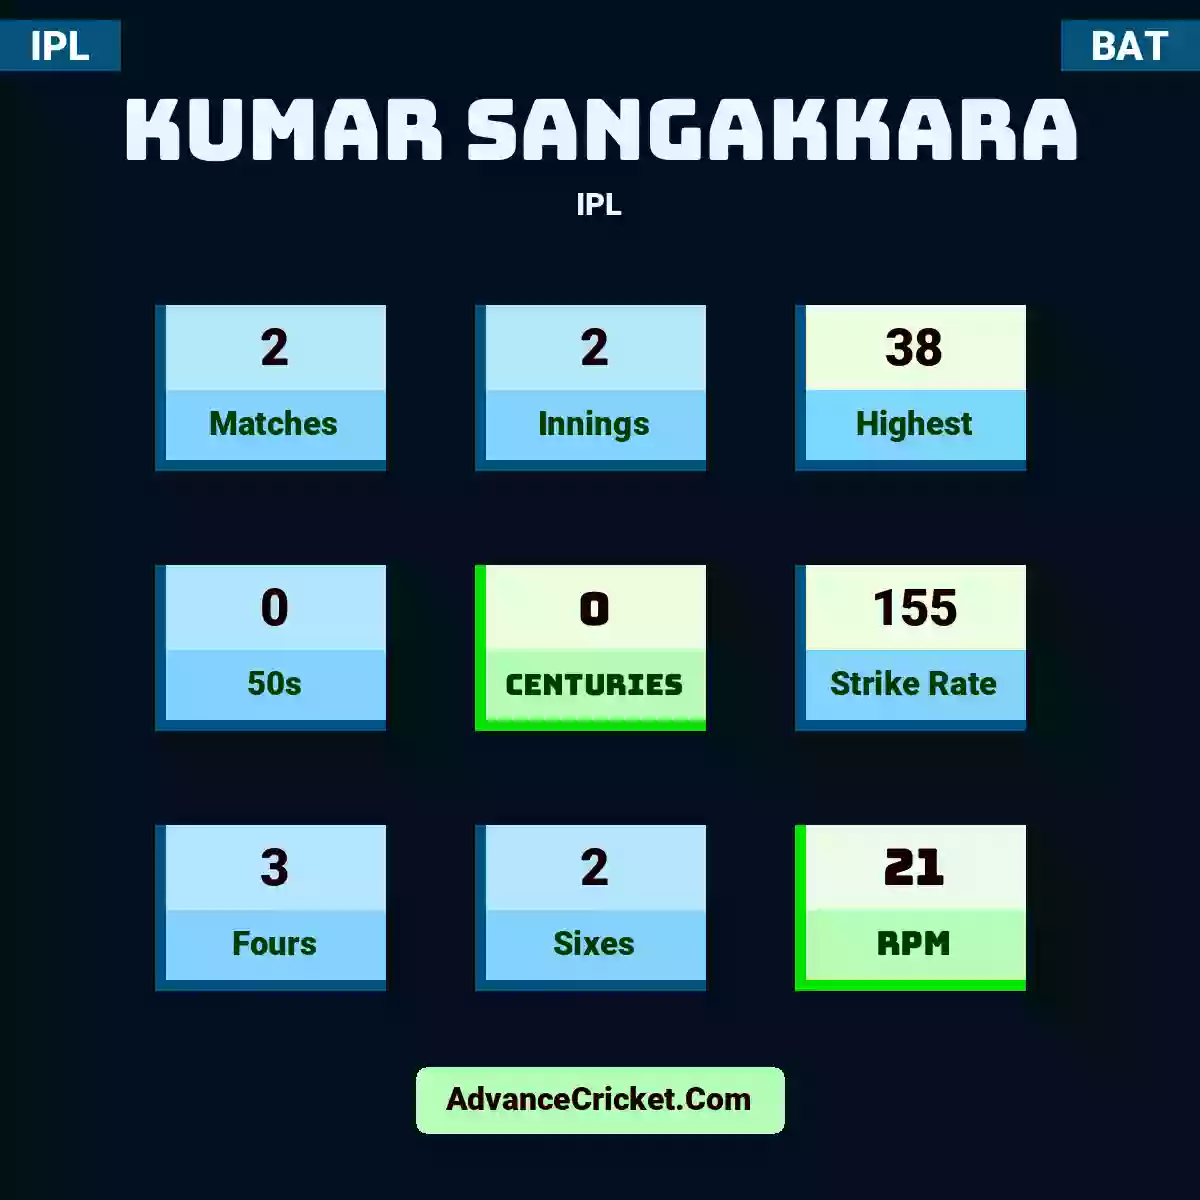 Kumar Sangakkara IPL , Kumar Sangakkara played 2 matches, scored 38 runs as highest, 0 half-centuries, and 0 centuries, with a strike rate of 155. K.Sangakkara hit 3 fours and 2 sixes, with an RPM of 21.